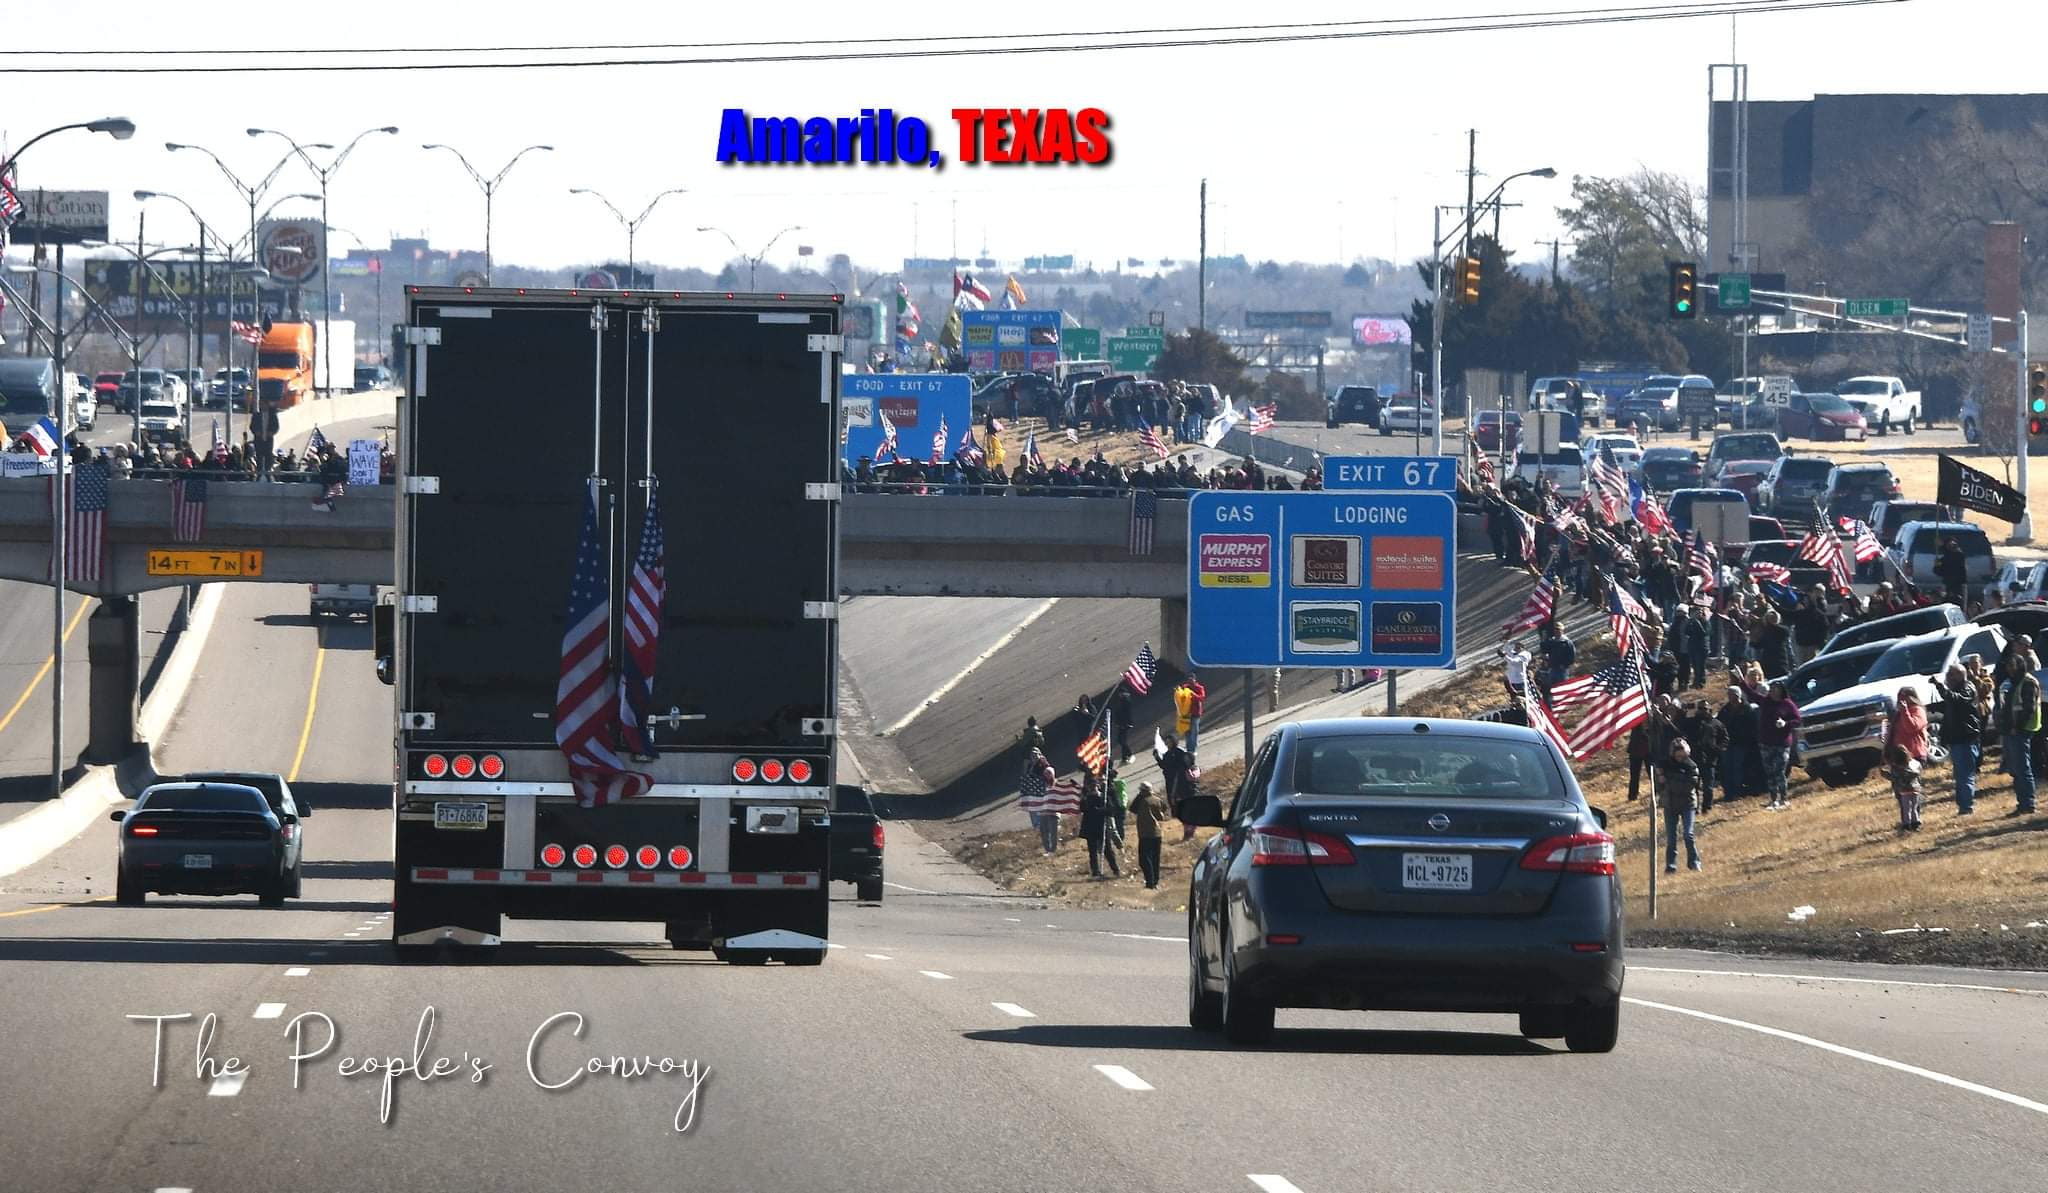 The People’s Convoy en route to Washington DC passes through Amarillo TX on Saturday